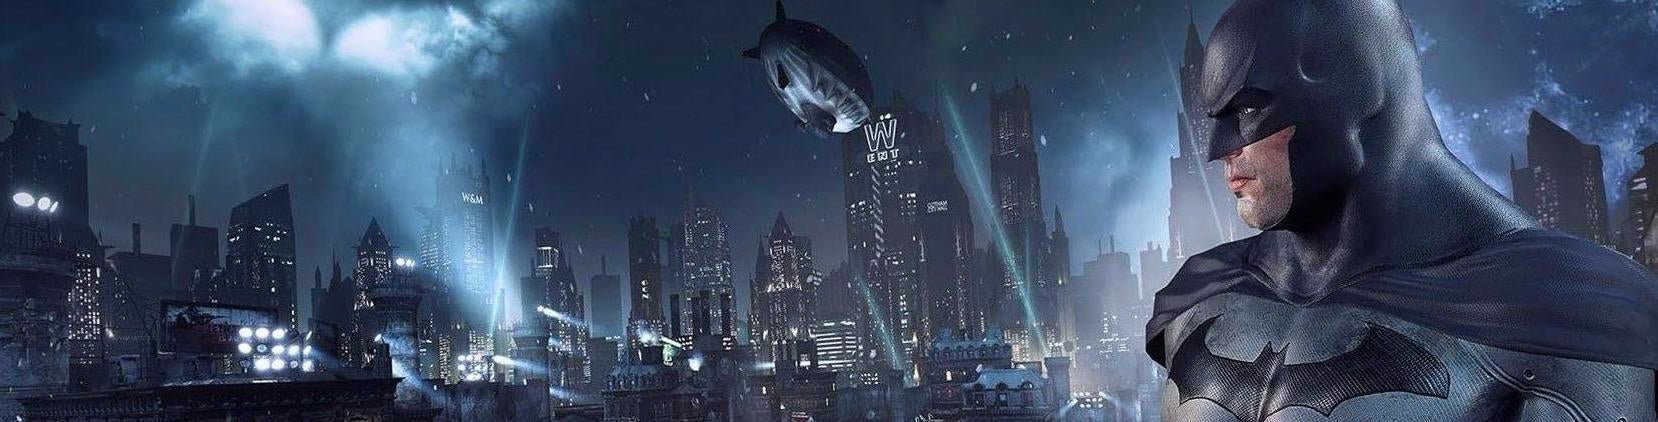 Obrazki dla Digital Foundry kontra Batman: Return to Arkham w wersji 1.02 na PS4